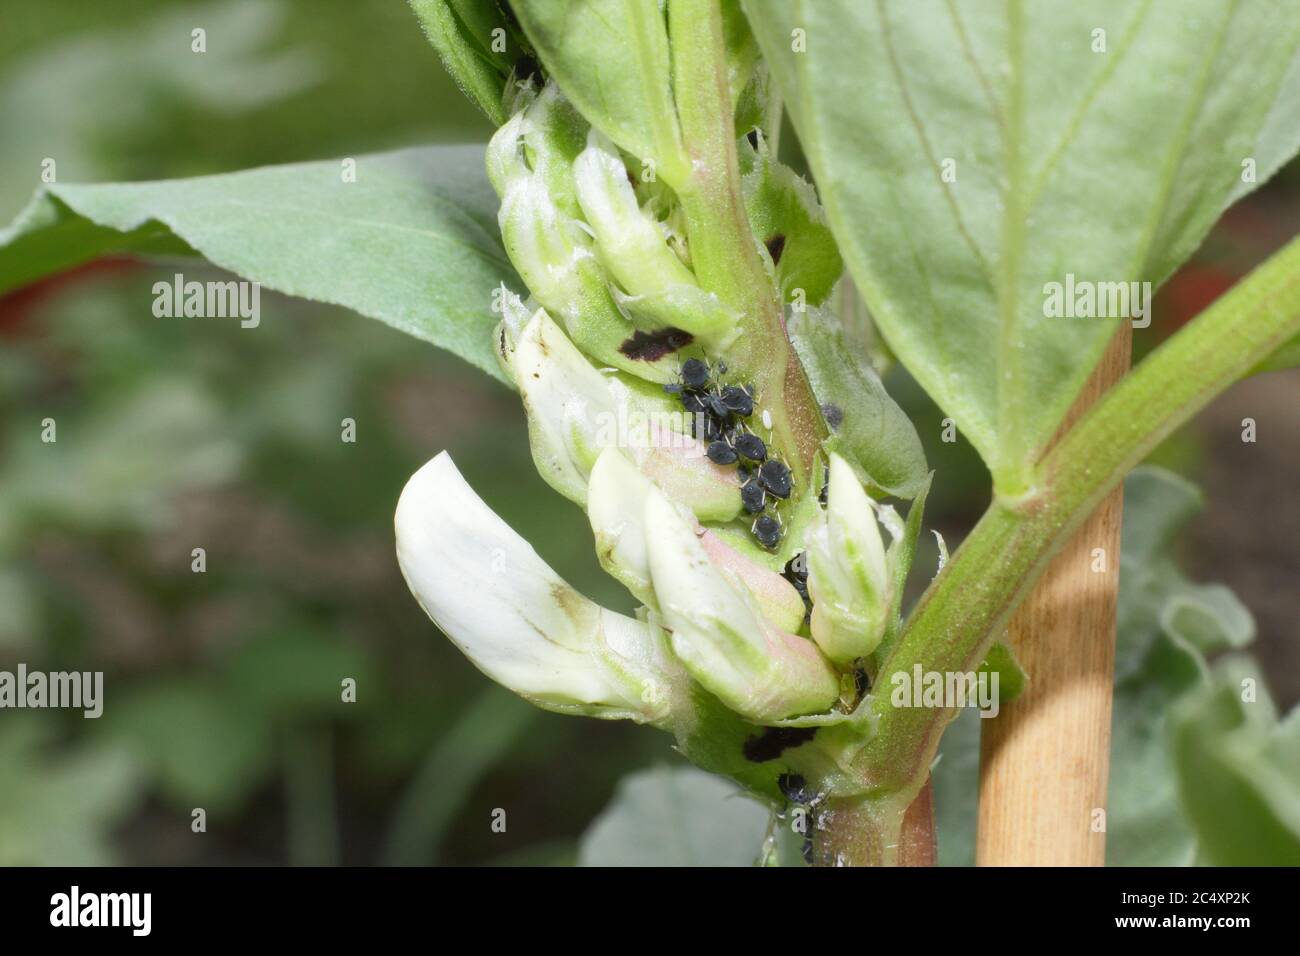 APHIS fabae sur Vicia faba 'Bunyard's Exhibition'. Infestation de la mouche noire, un type de puceron, sur la croissance molle d'une plante à larges haricots. ROYAUME-UNI Banque D'Images